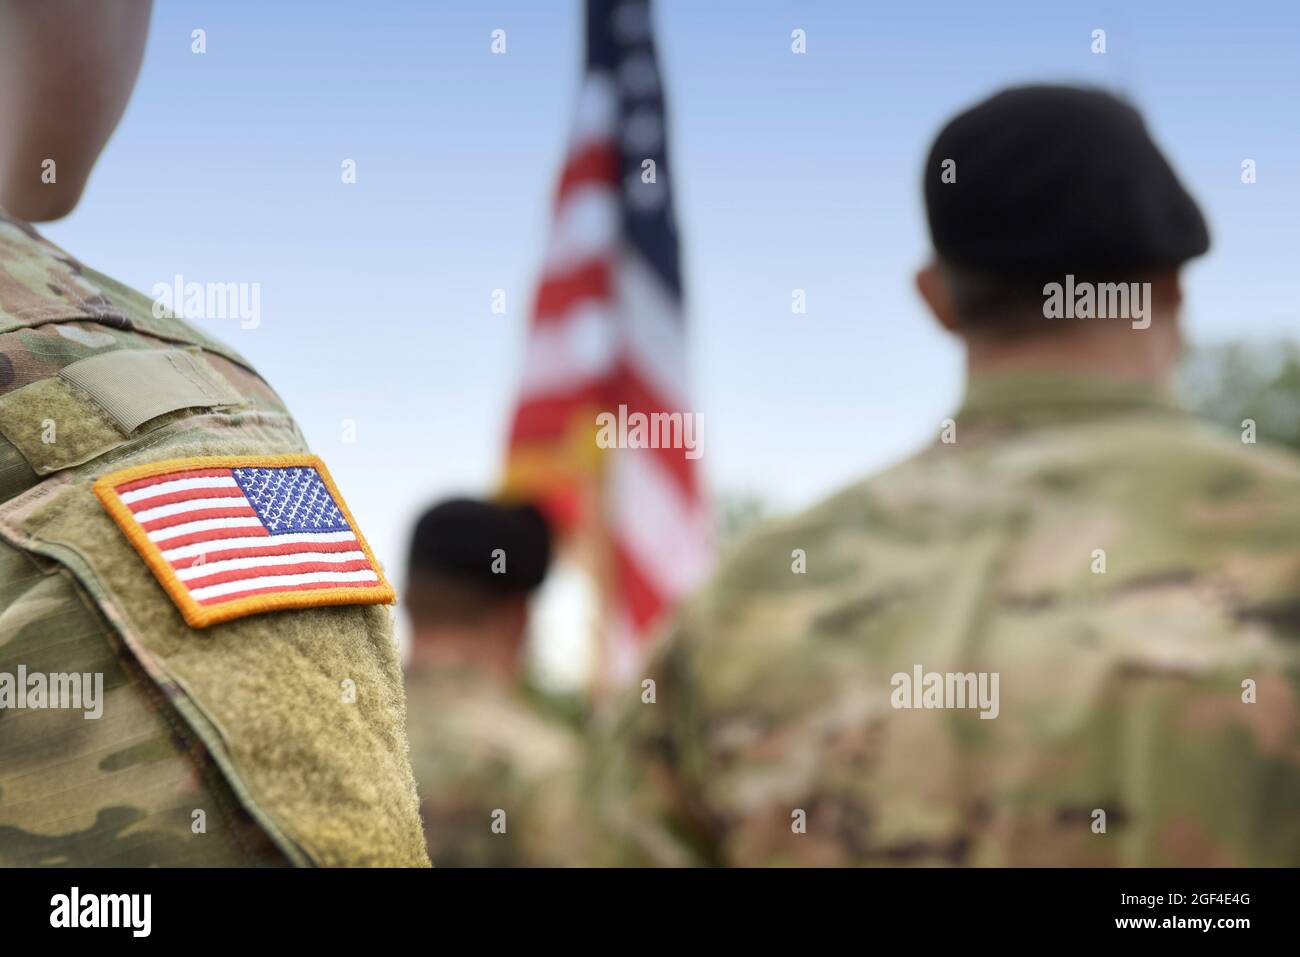 Soldati STATUNITENSI. Esercito DEGLI STATI Uniti. USA patch flag sulla divisa militare degli Stati Uniti. Soldati sul terreno della sfilata dalla parte posteriore. Giornata dei veterani. Memorial Day. Foto Stock